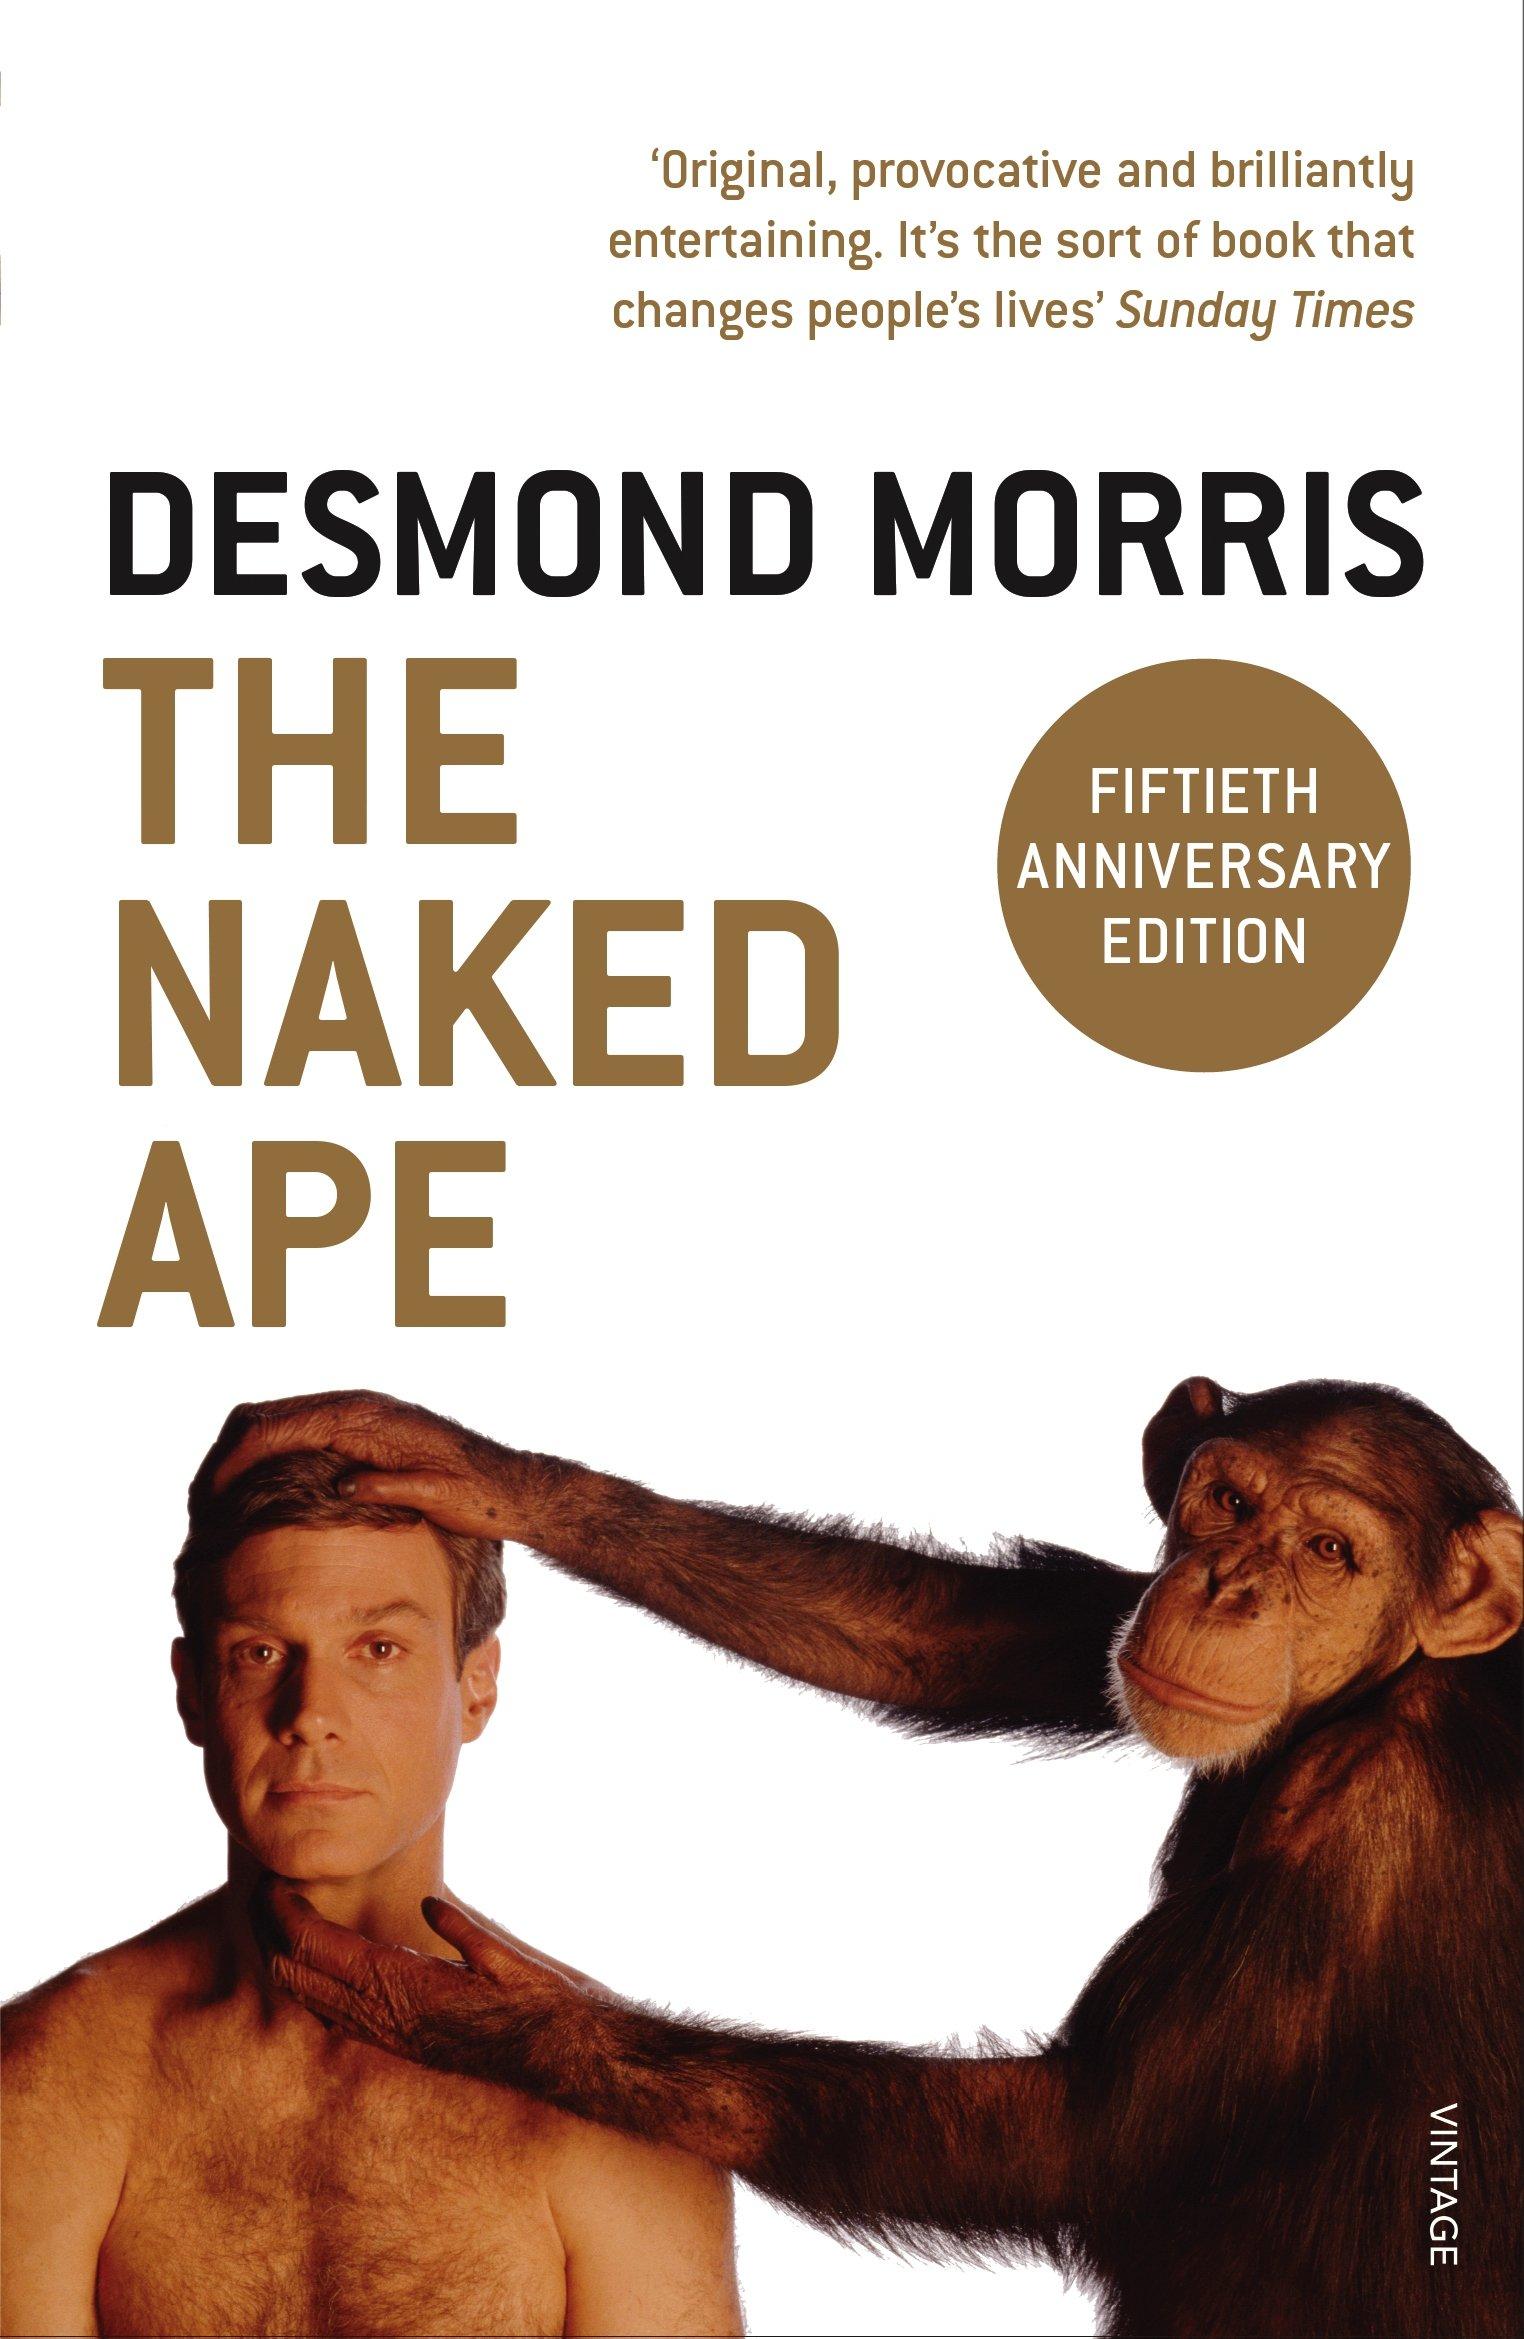 القرد العاري - ديزموند موريس - نظرية التطور - علم النفس التطوري